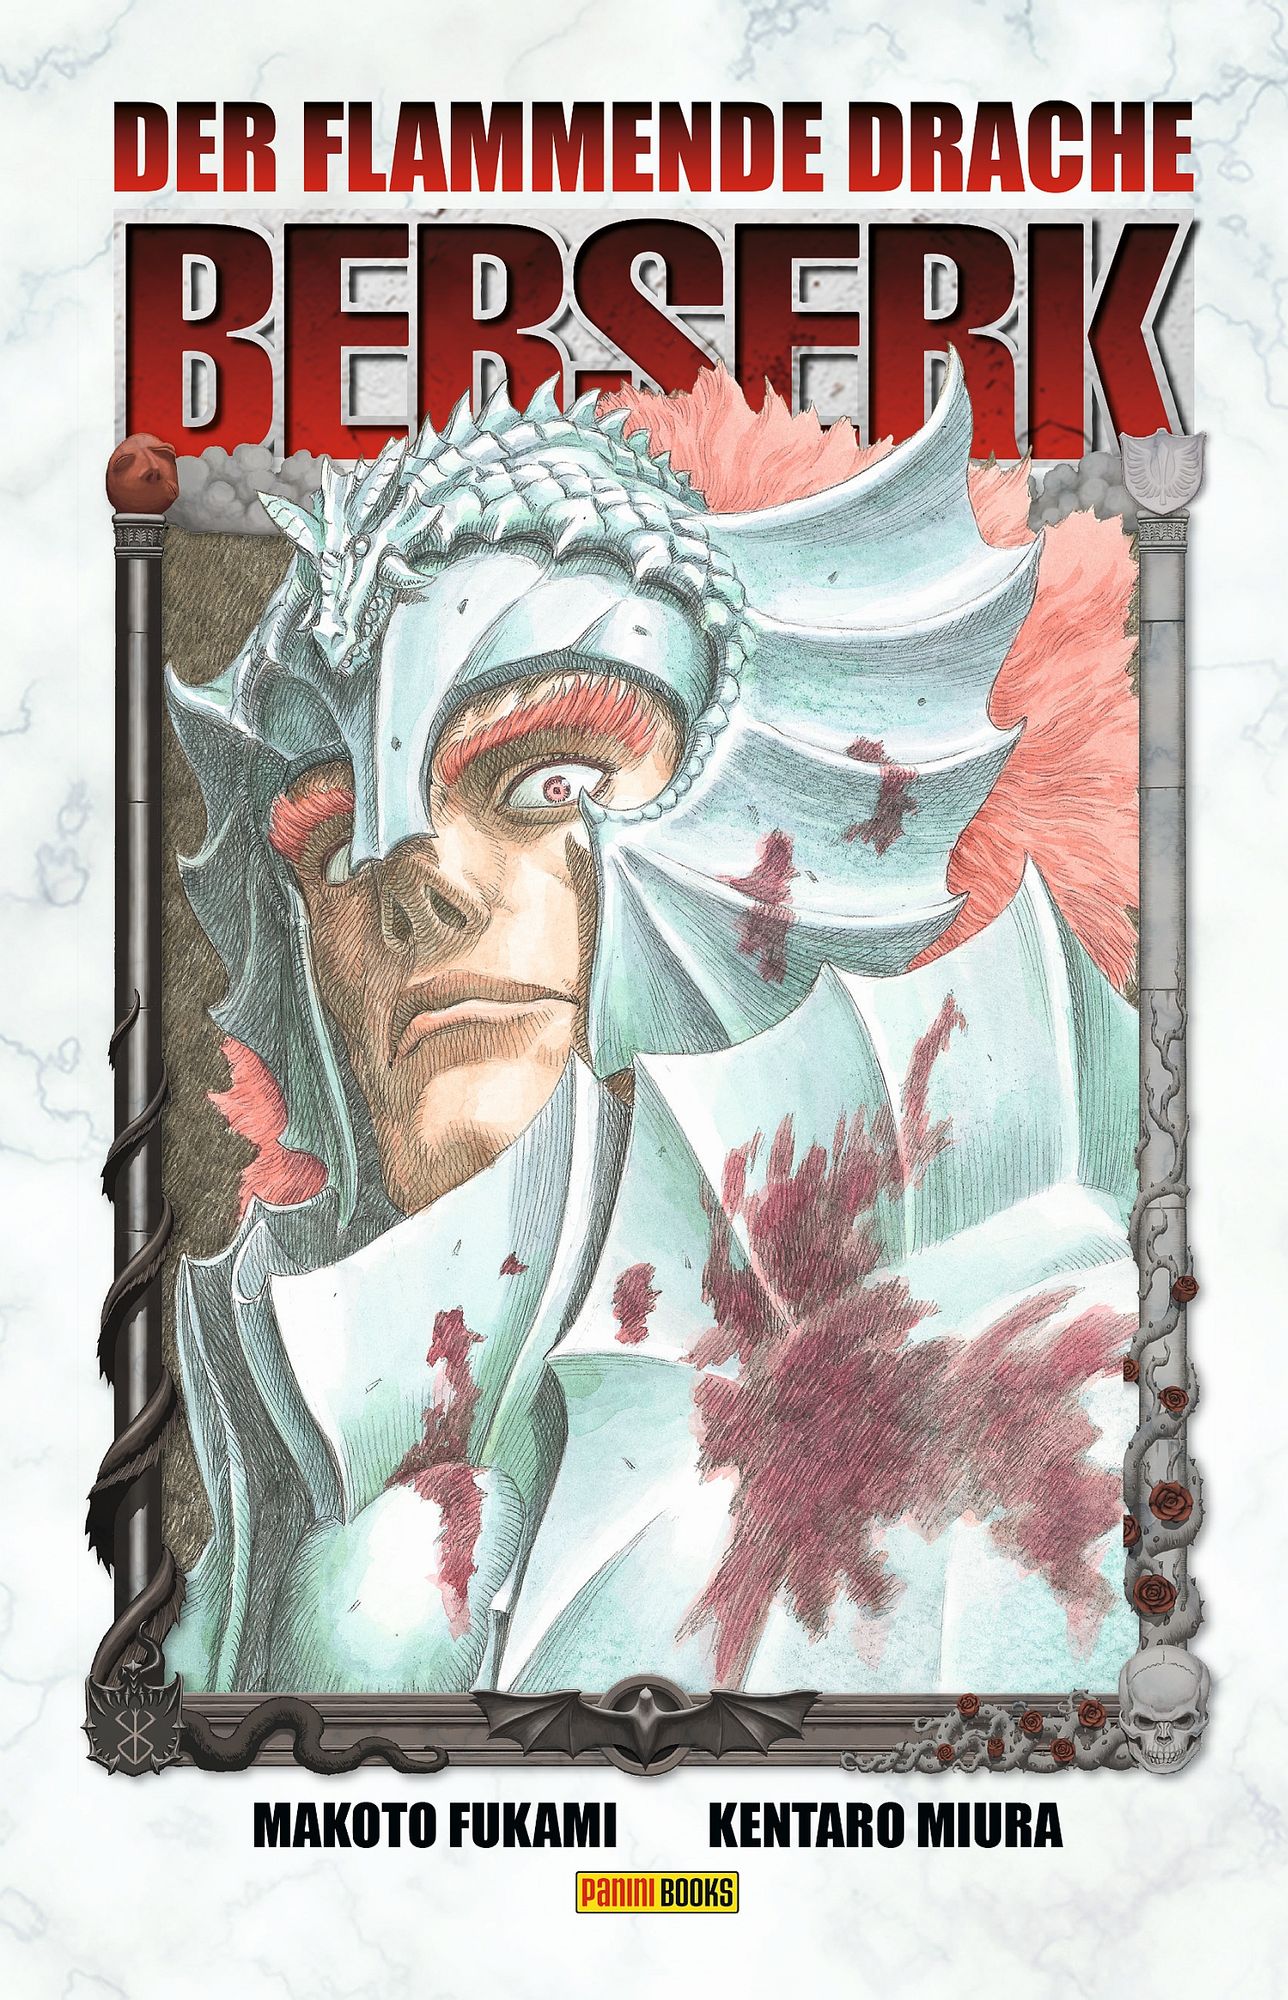 Maximum Berserk 13 Manga eBook by Kentaro Miura - EPUB Book